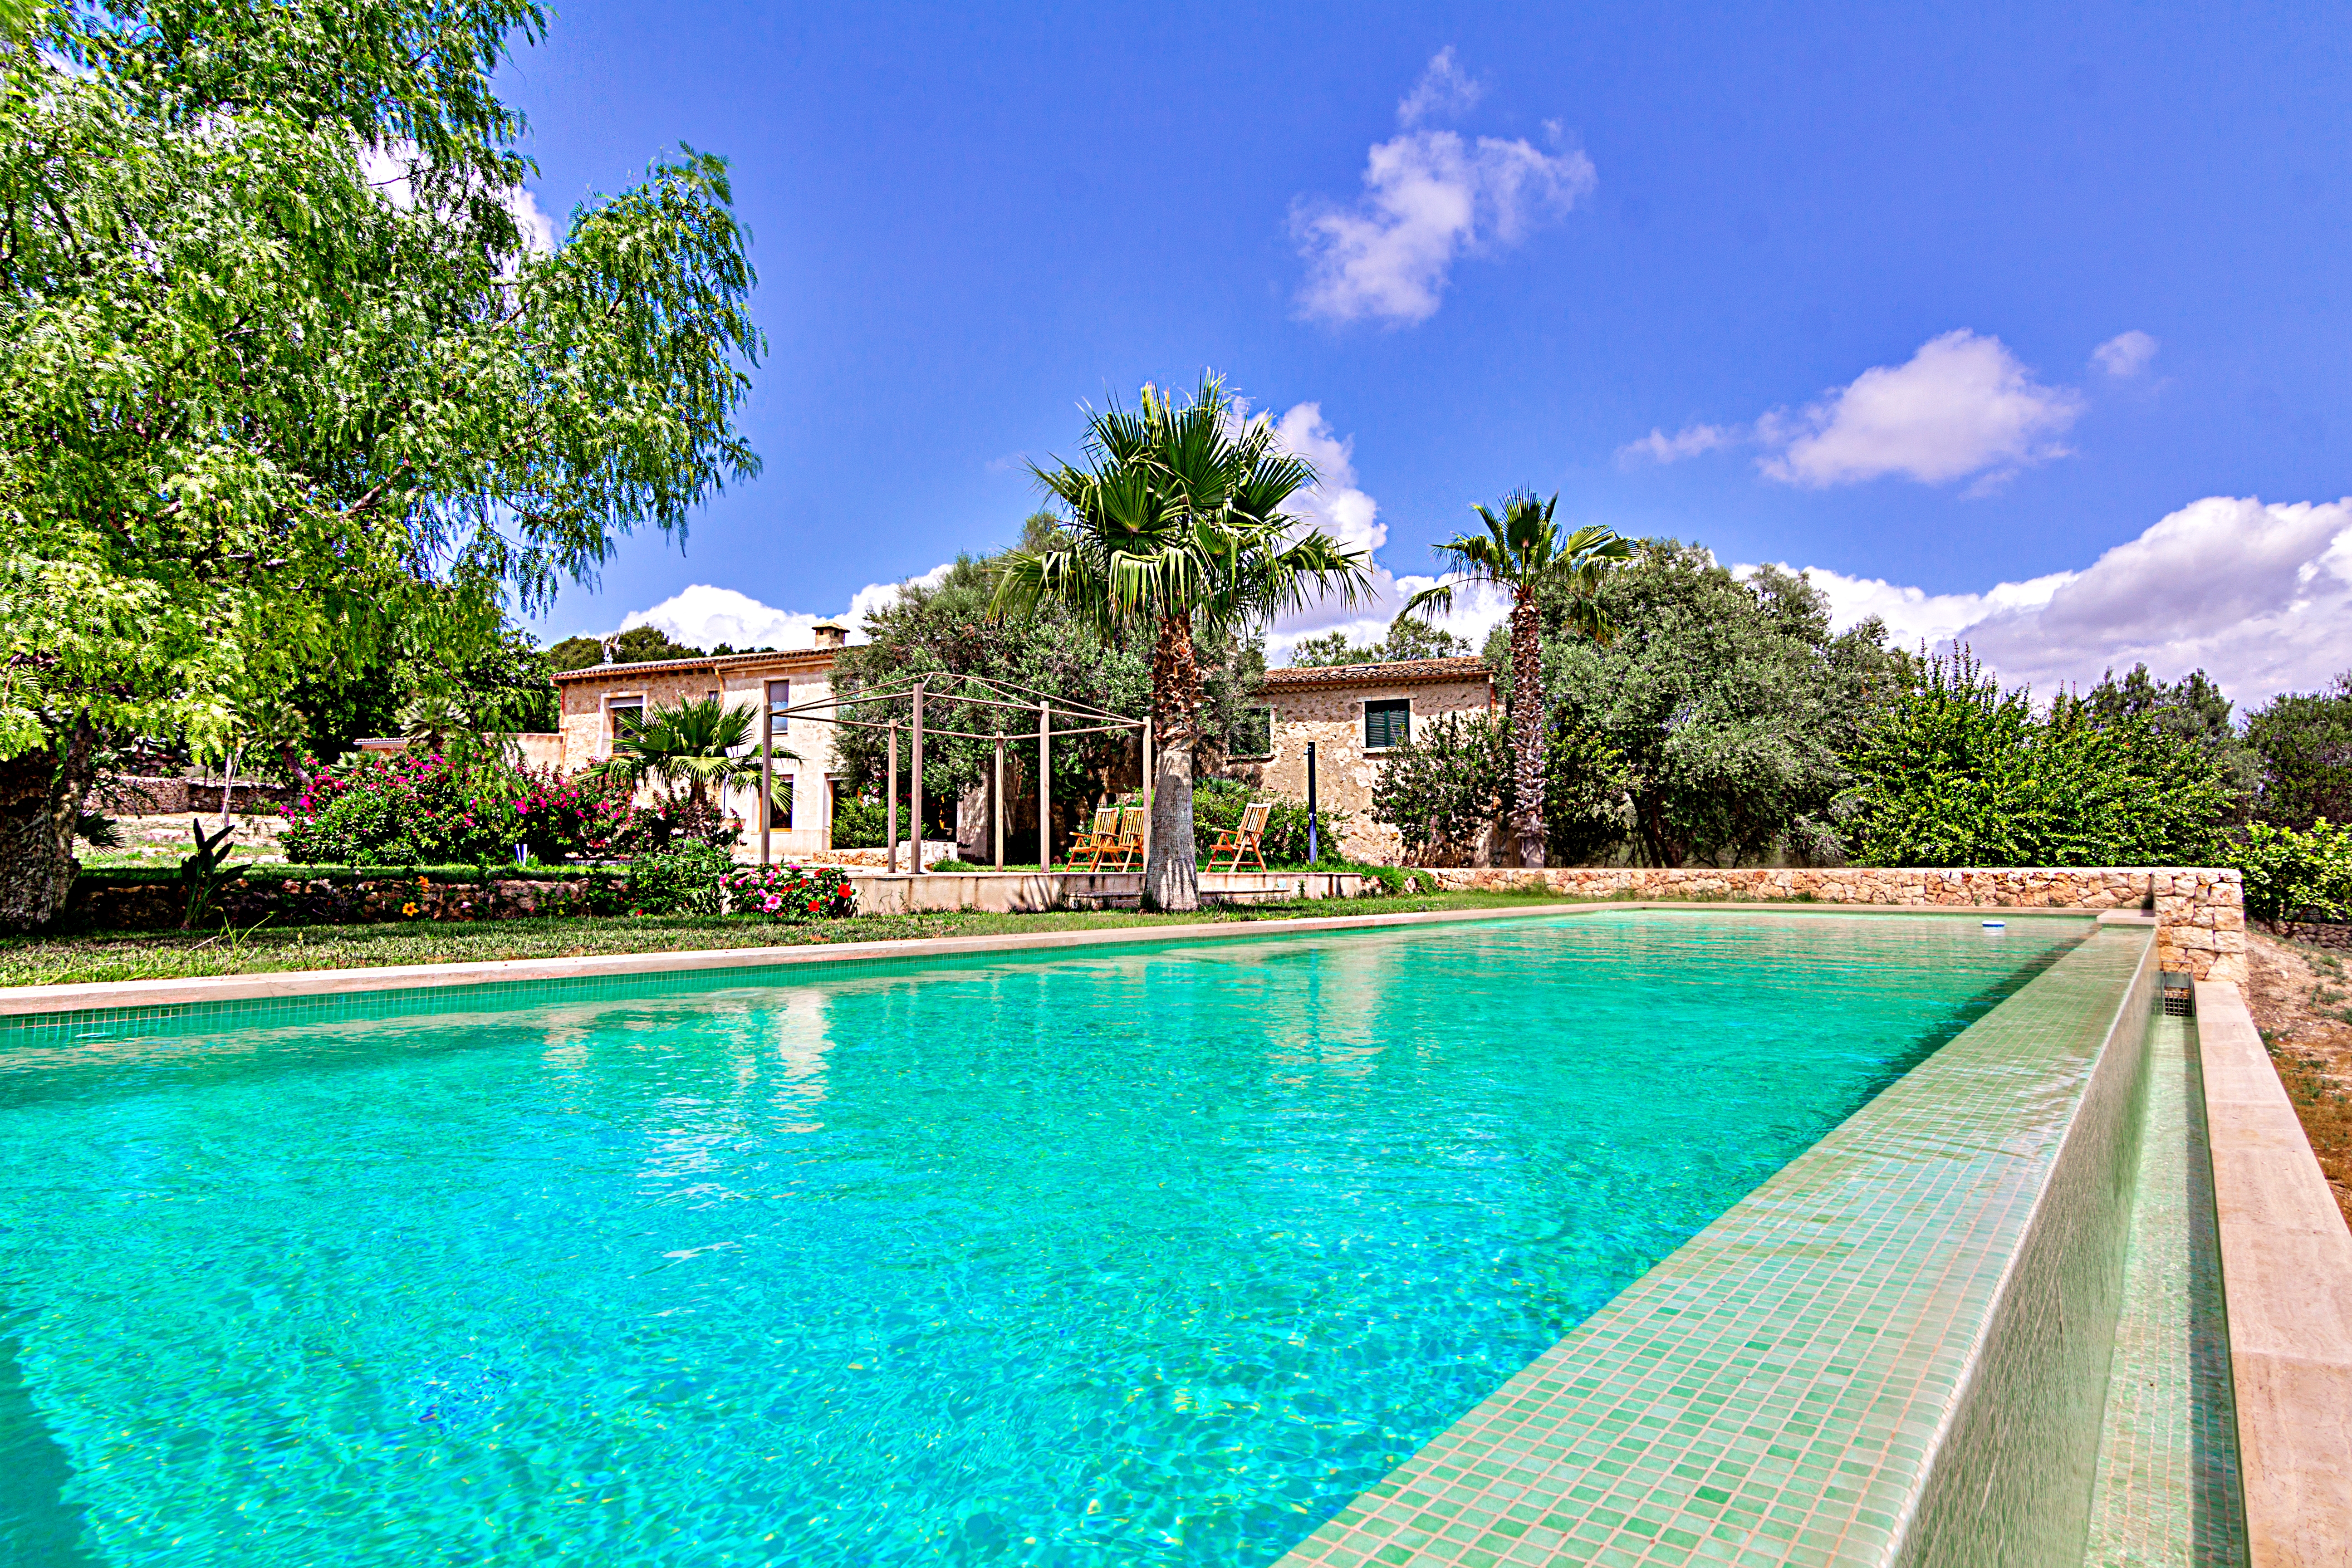 Villa mit Pool und Gästehaus.